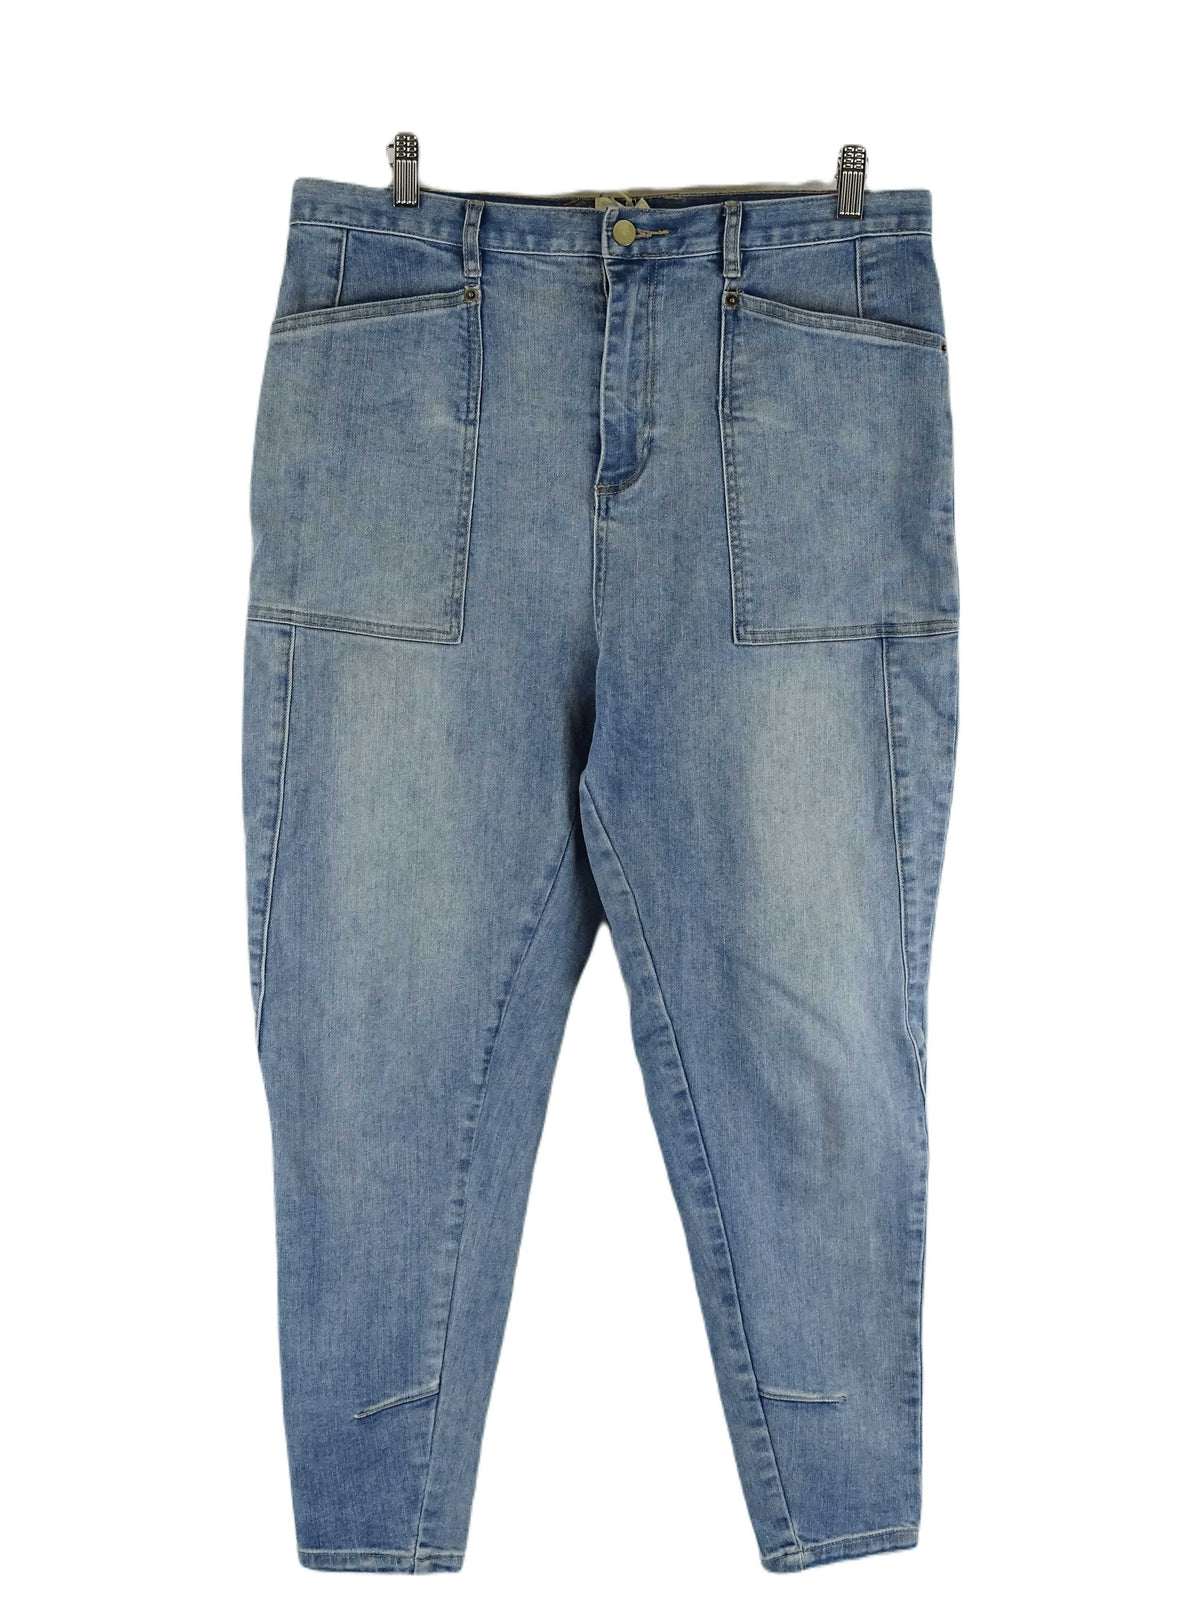 Morrison Blue Jeans L